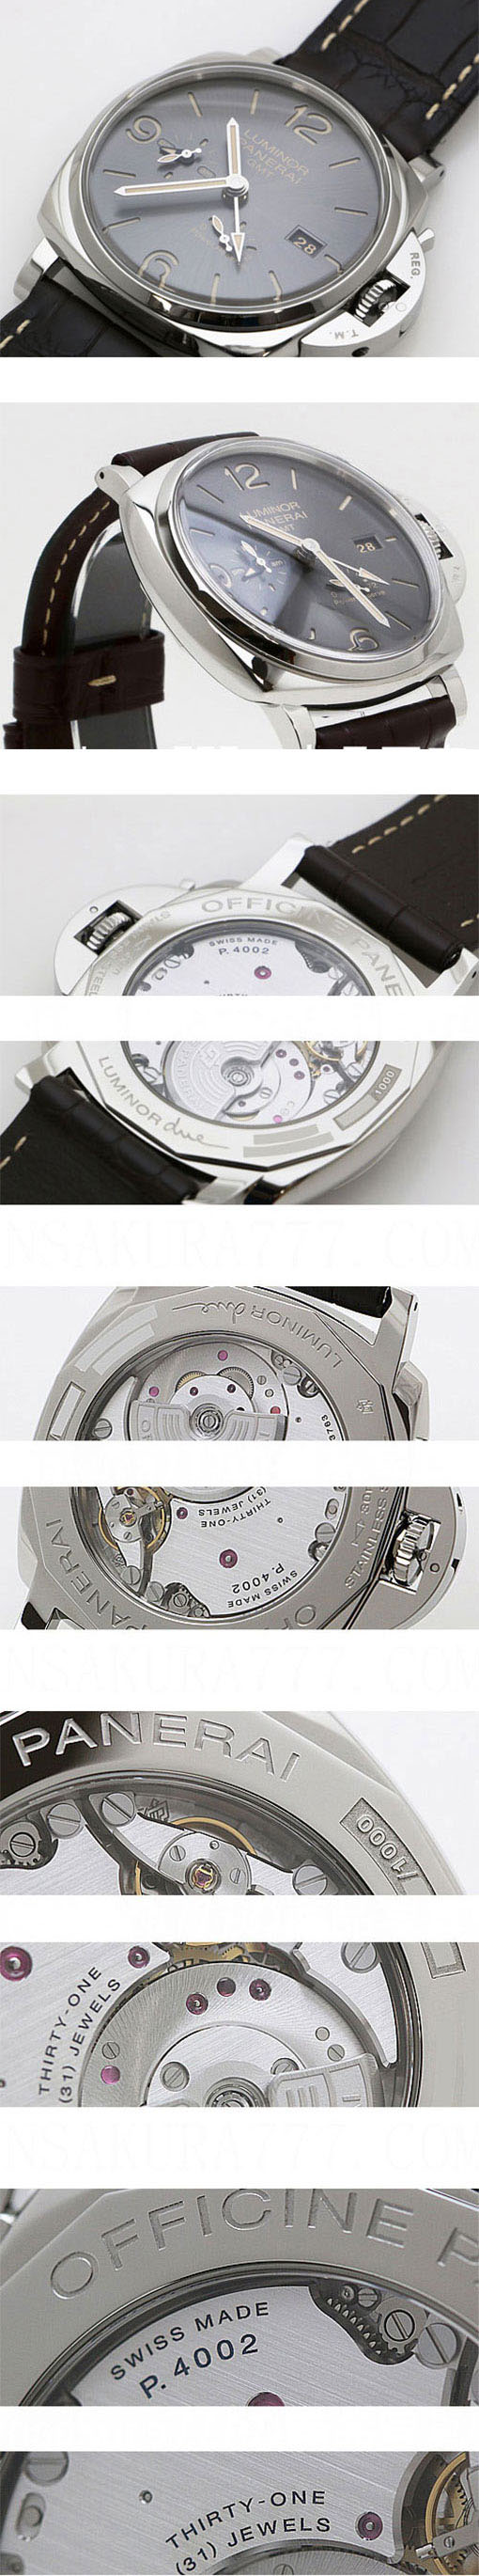 ミニマルな印象 PANERAI ルミノール ドゥエ ３デイズ GMT パワーリザーブ オートマチック アッチャイオ PAM00944 スーパーコピー時計 スモールセコンド